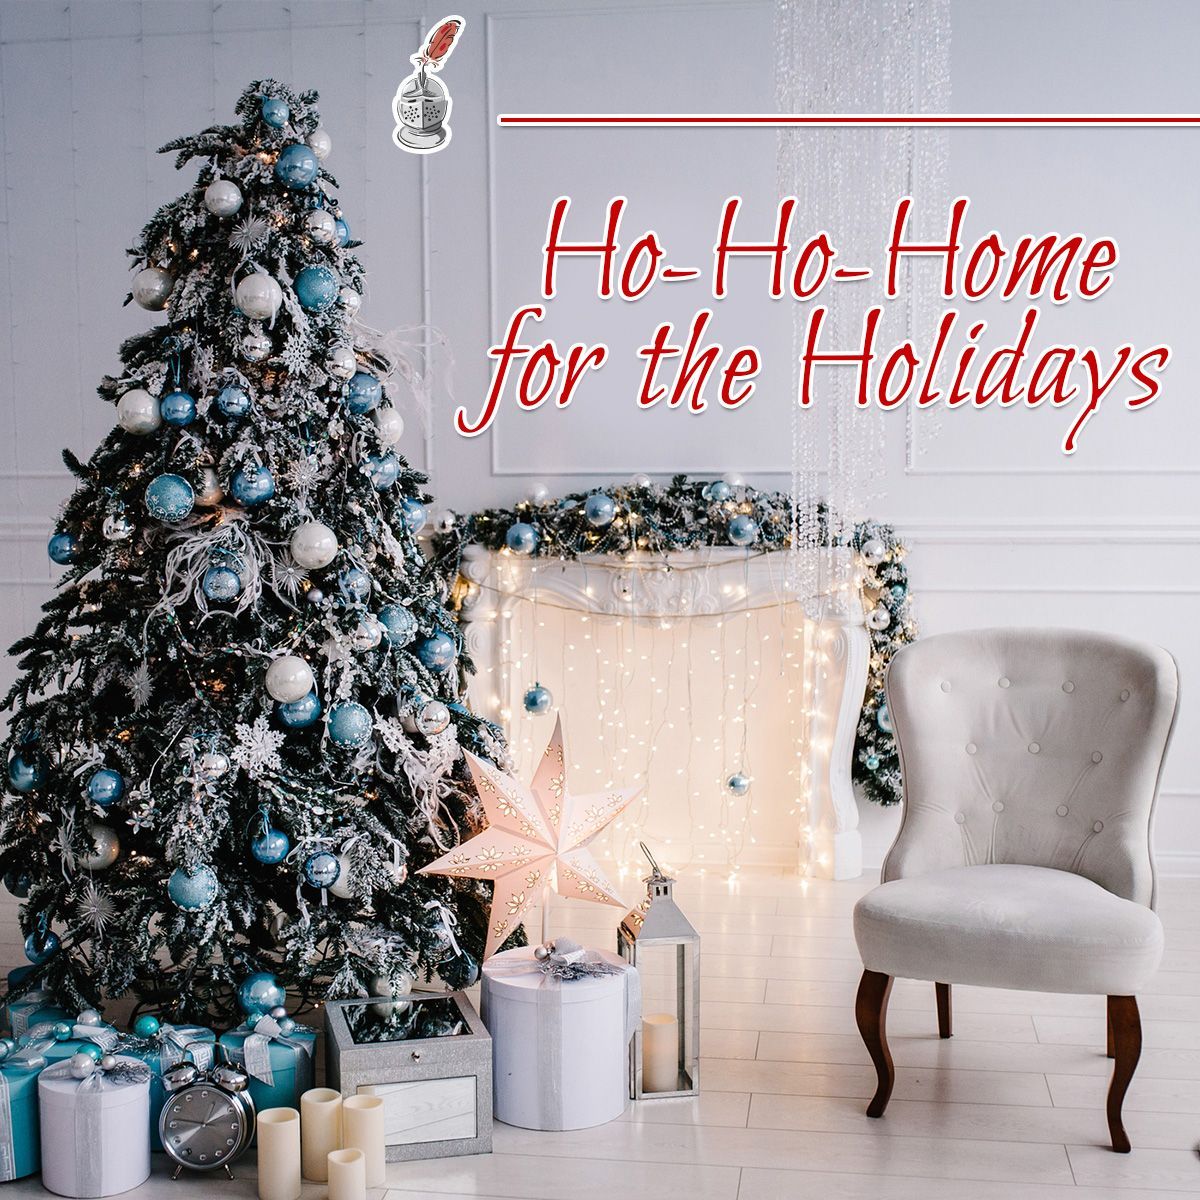 Ho-Ho-Home for the Holidays